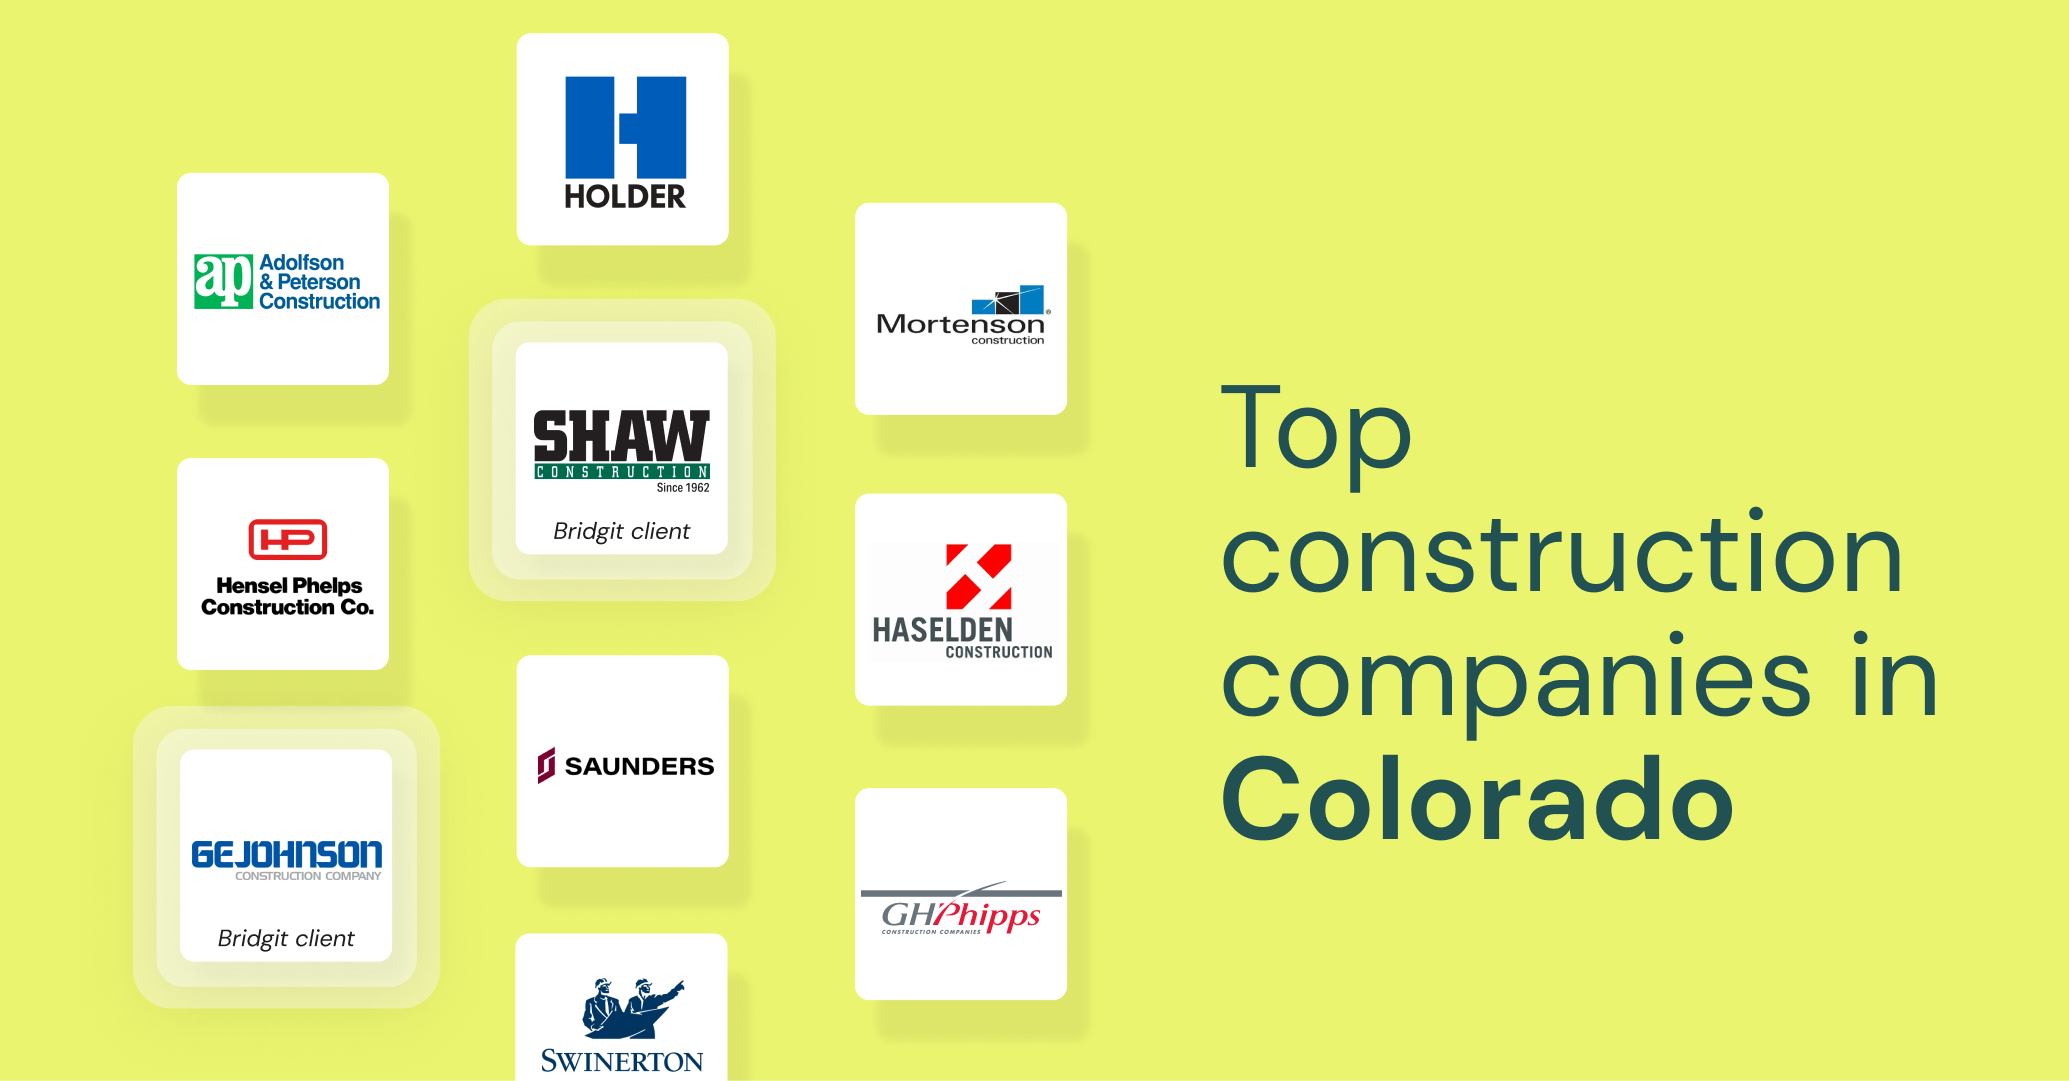 Top construction companies in Colorado - Bridgit